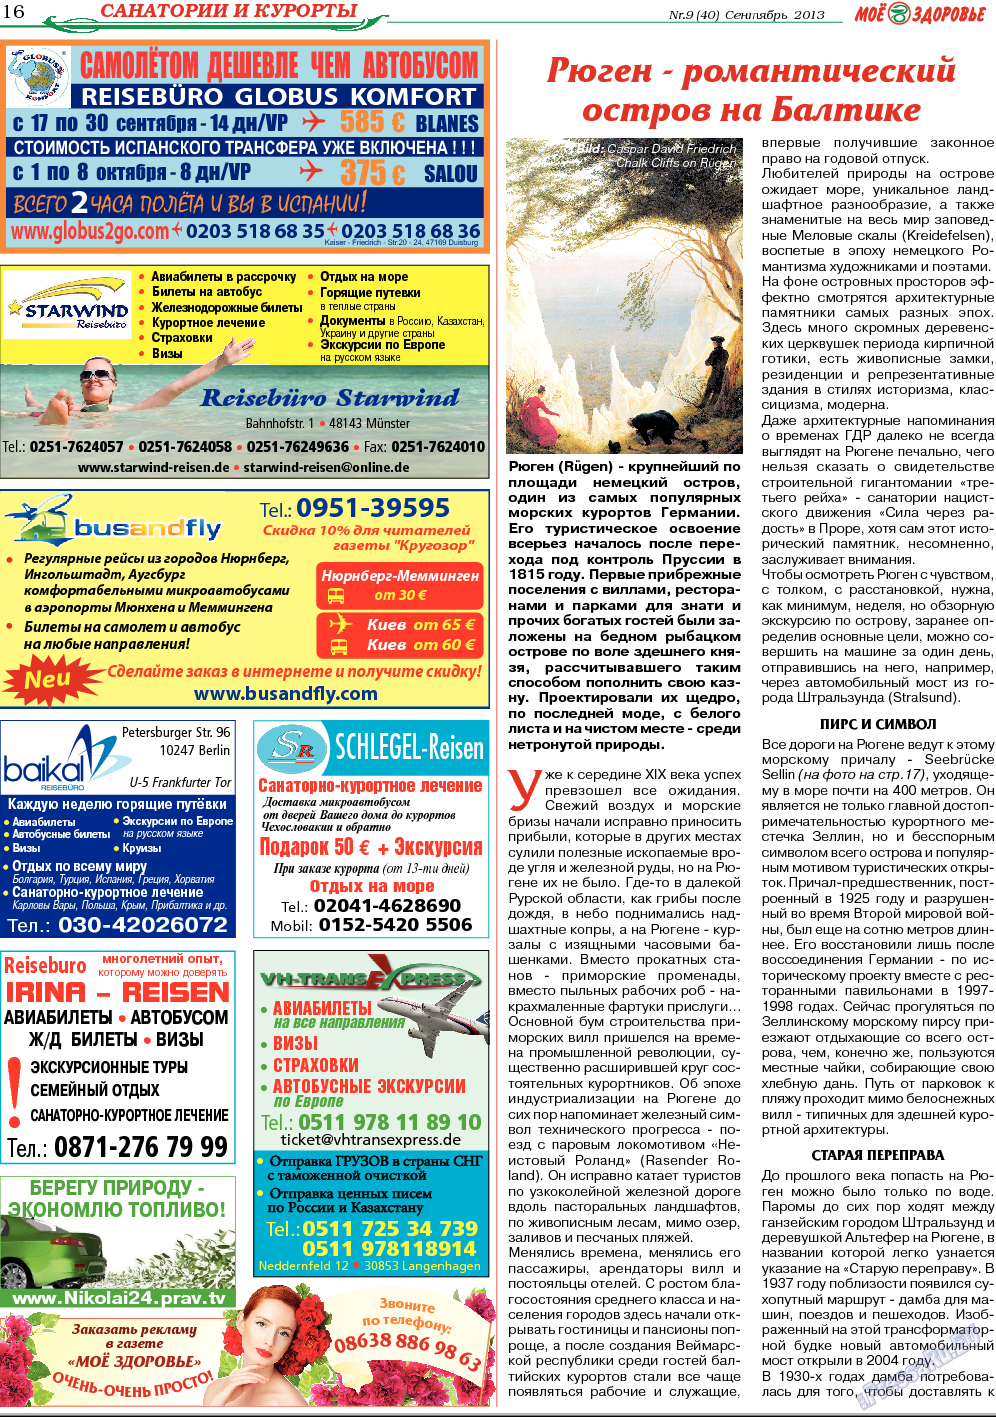 Кругозор, газета. 2013 №9 стр.16